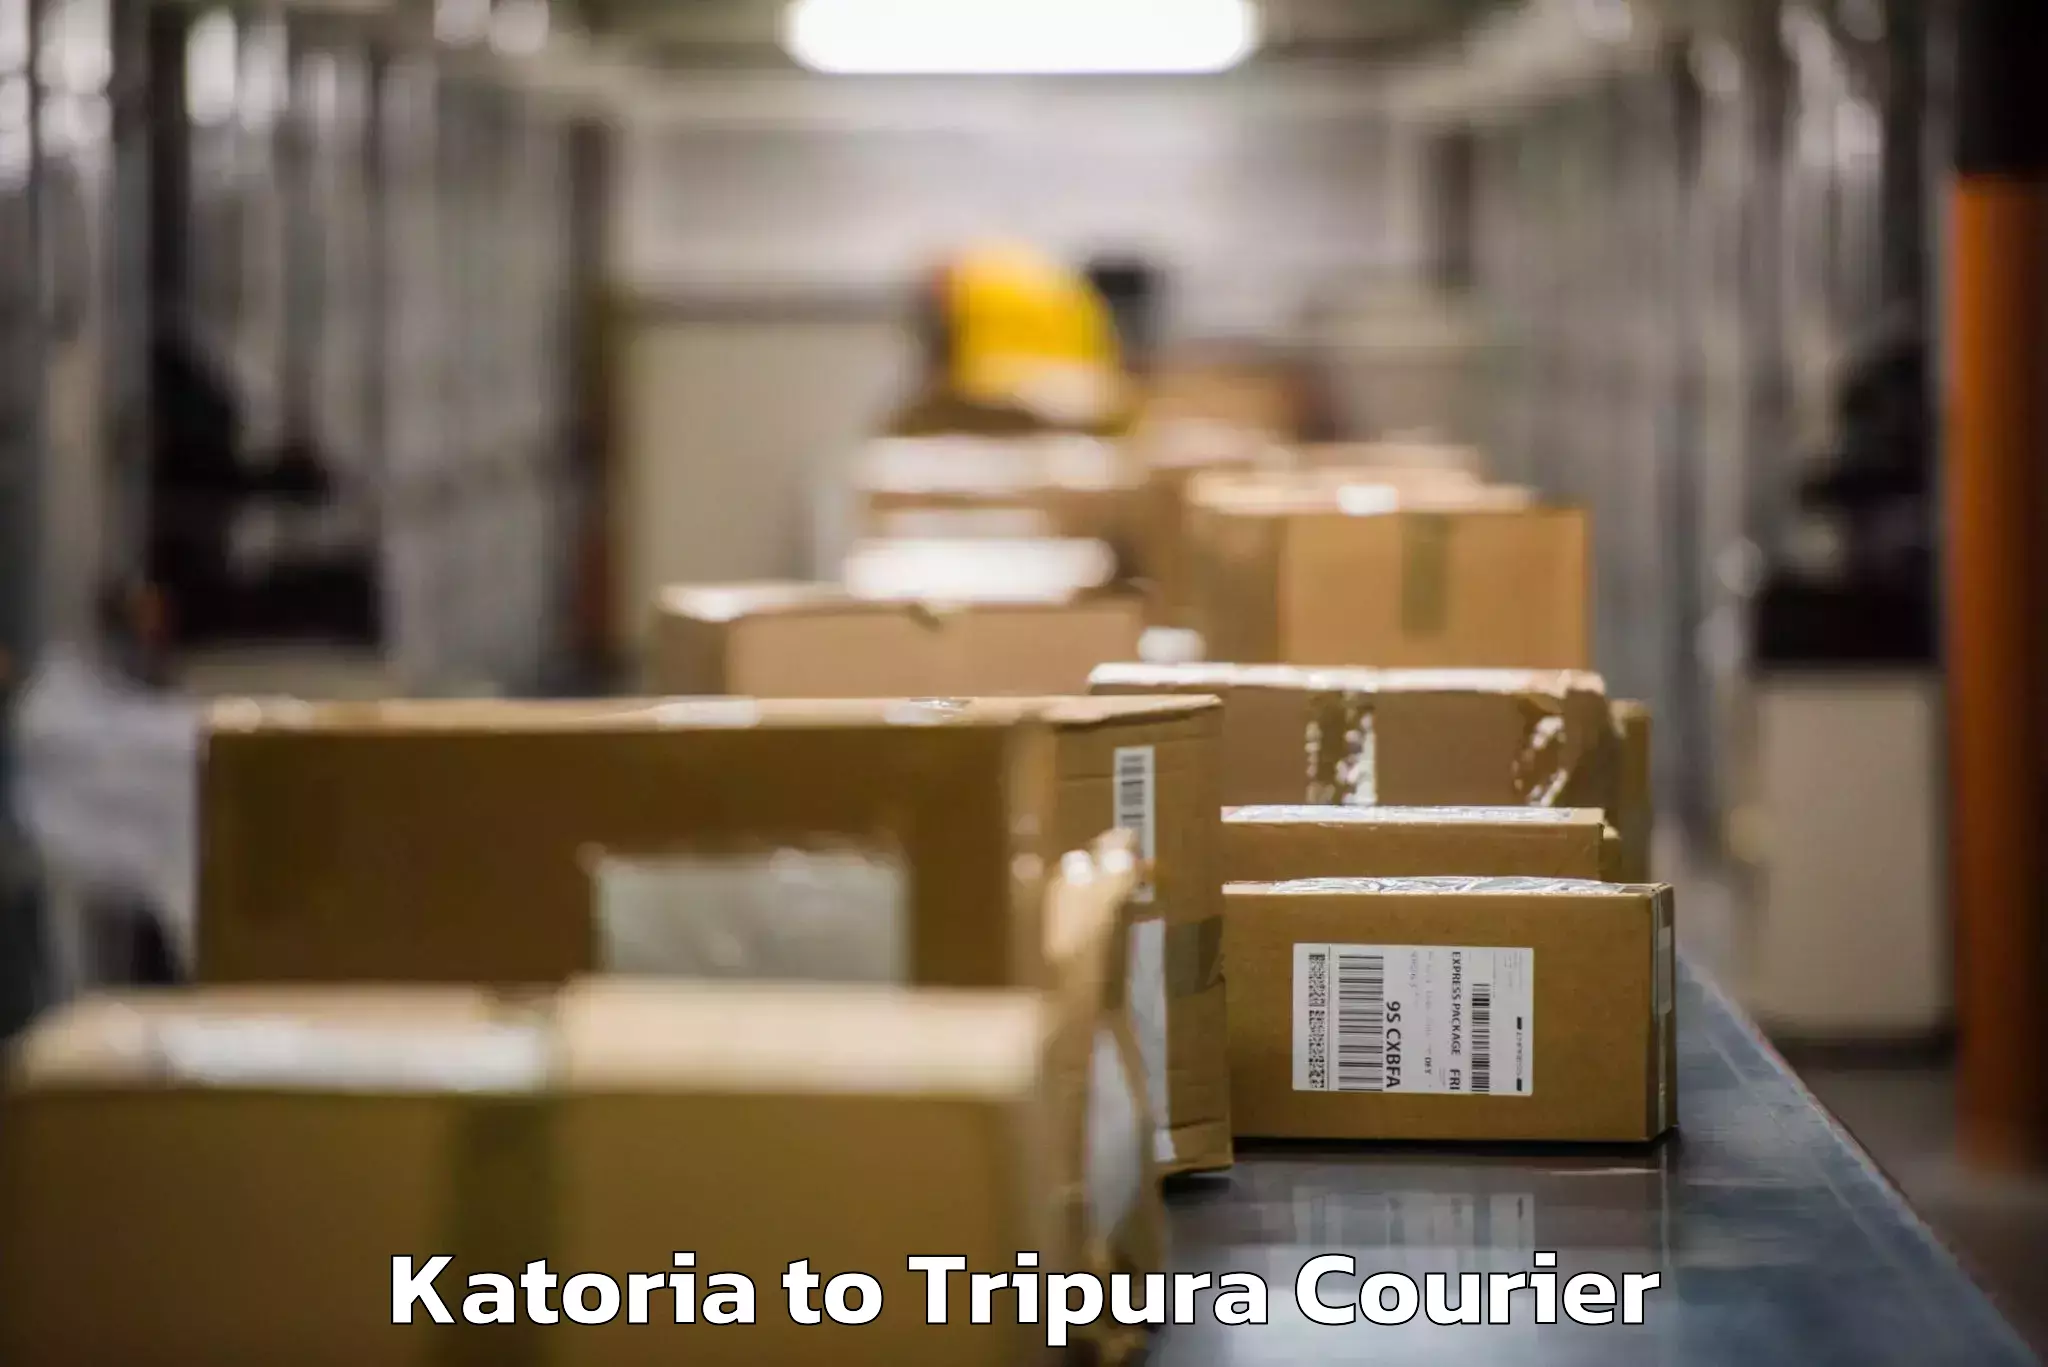 Baggage transport services Katoria to Agartala